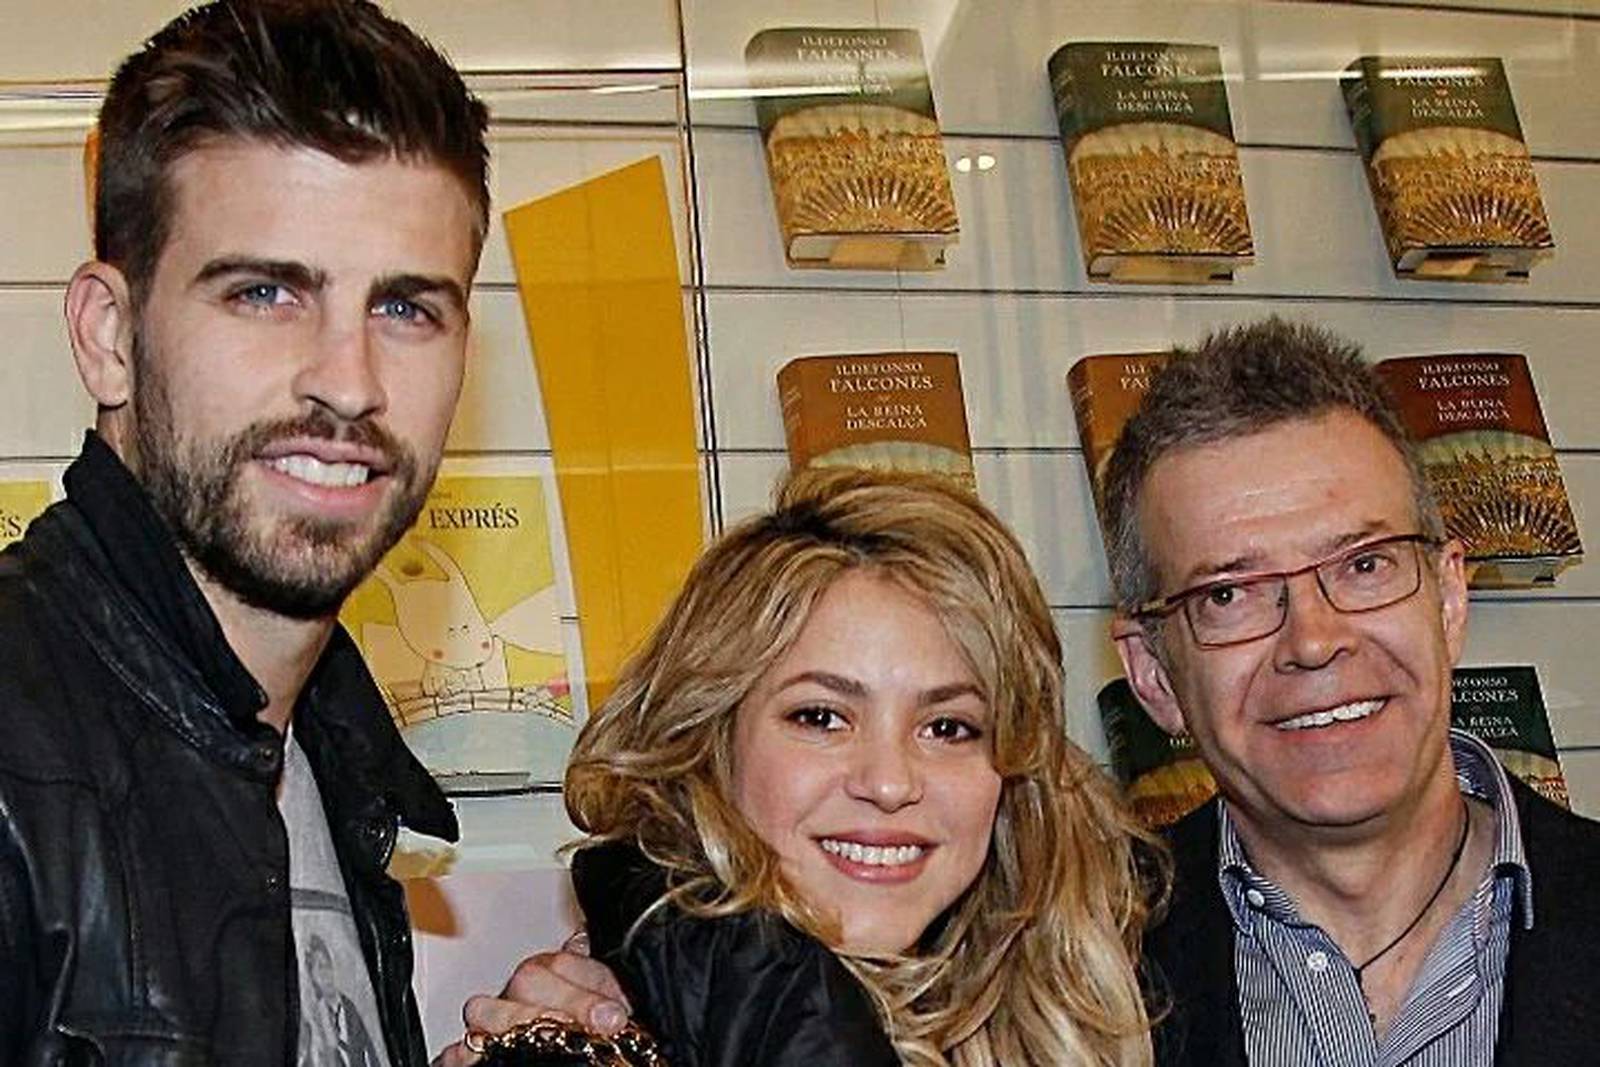 Nueva canción de Shakira con grupo mexicano se estrenó: así suena